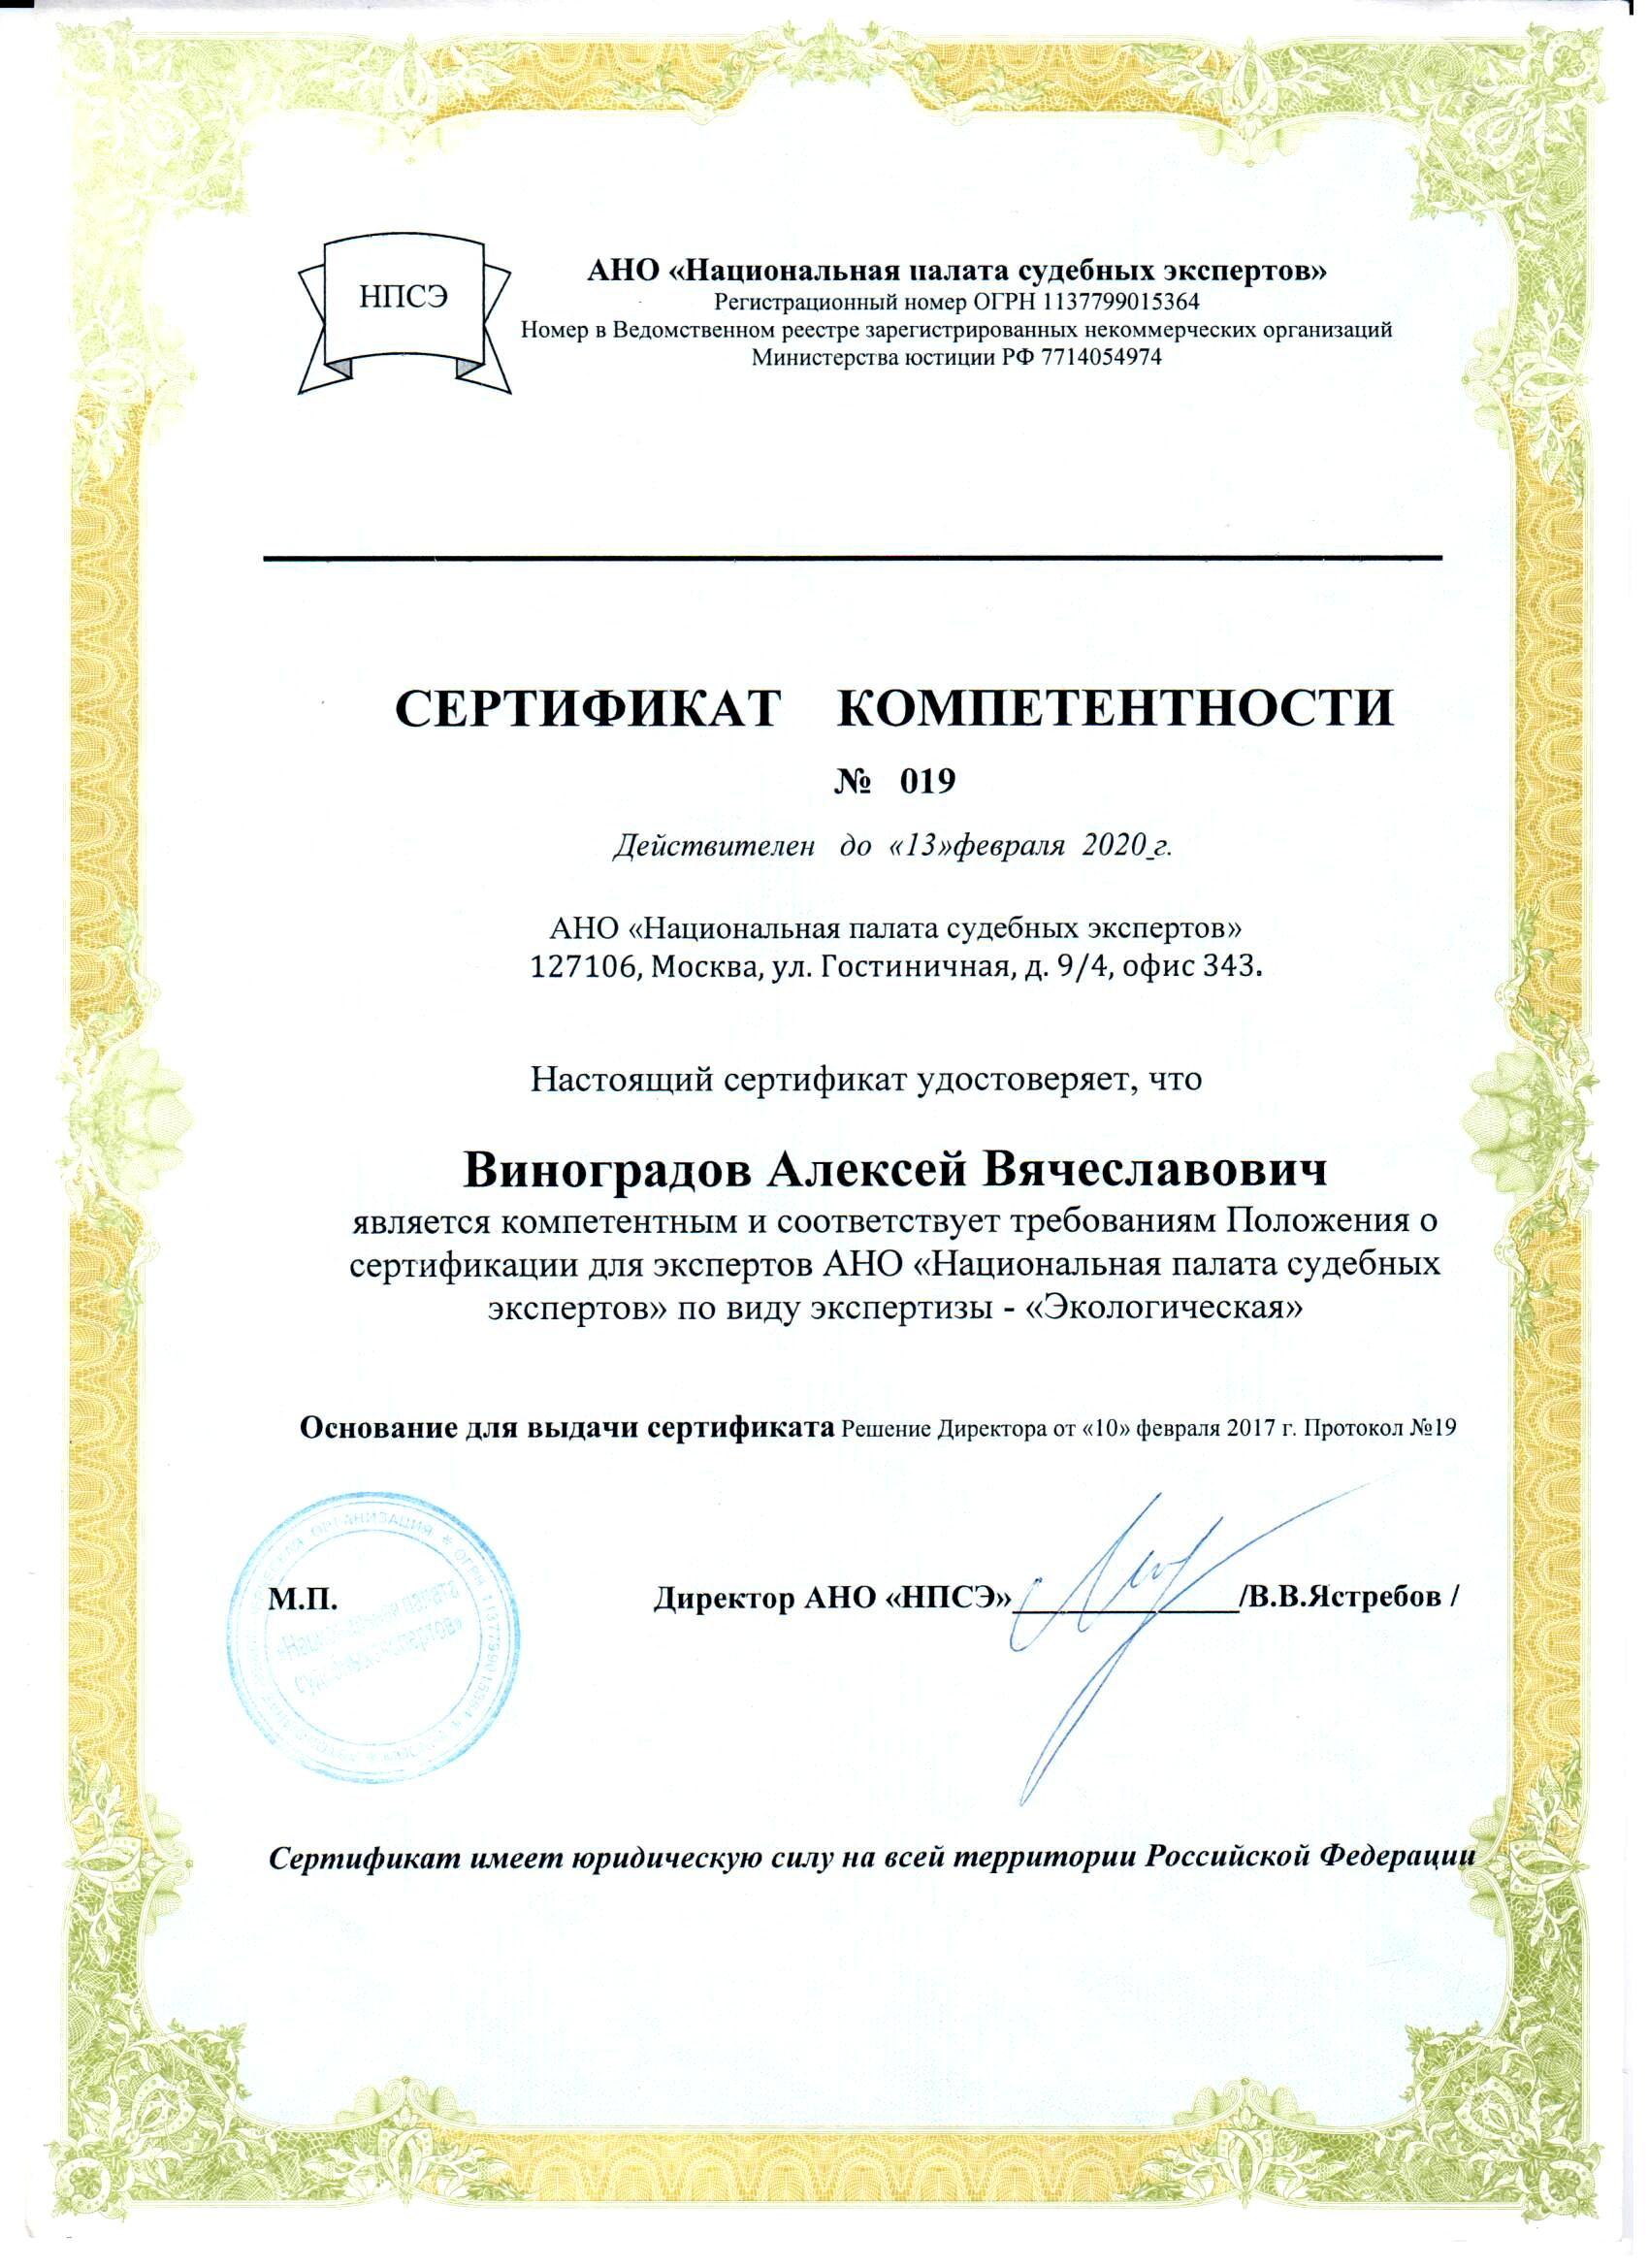 Сертификат компетентности АНО Национальная палата судебных экспертов